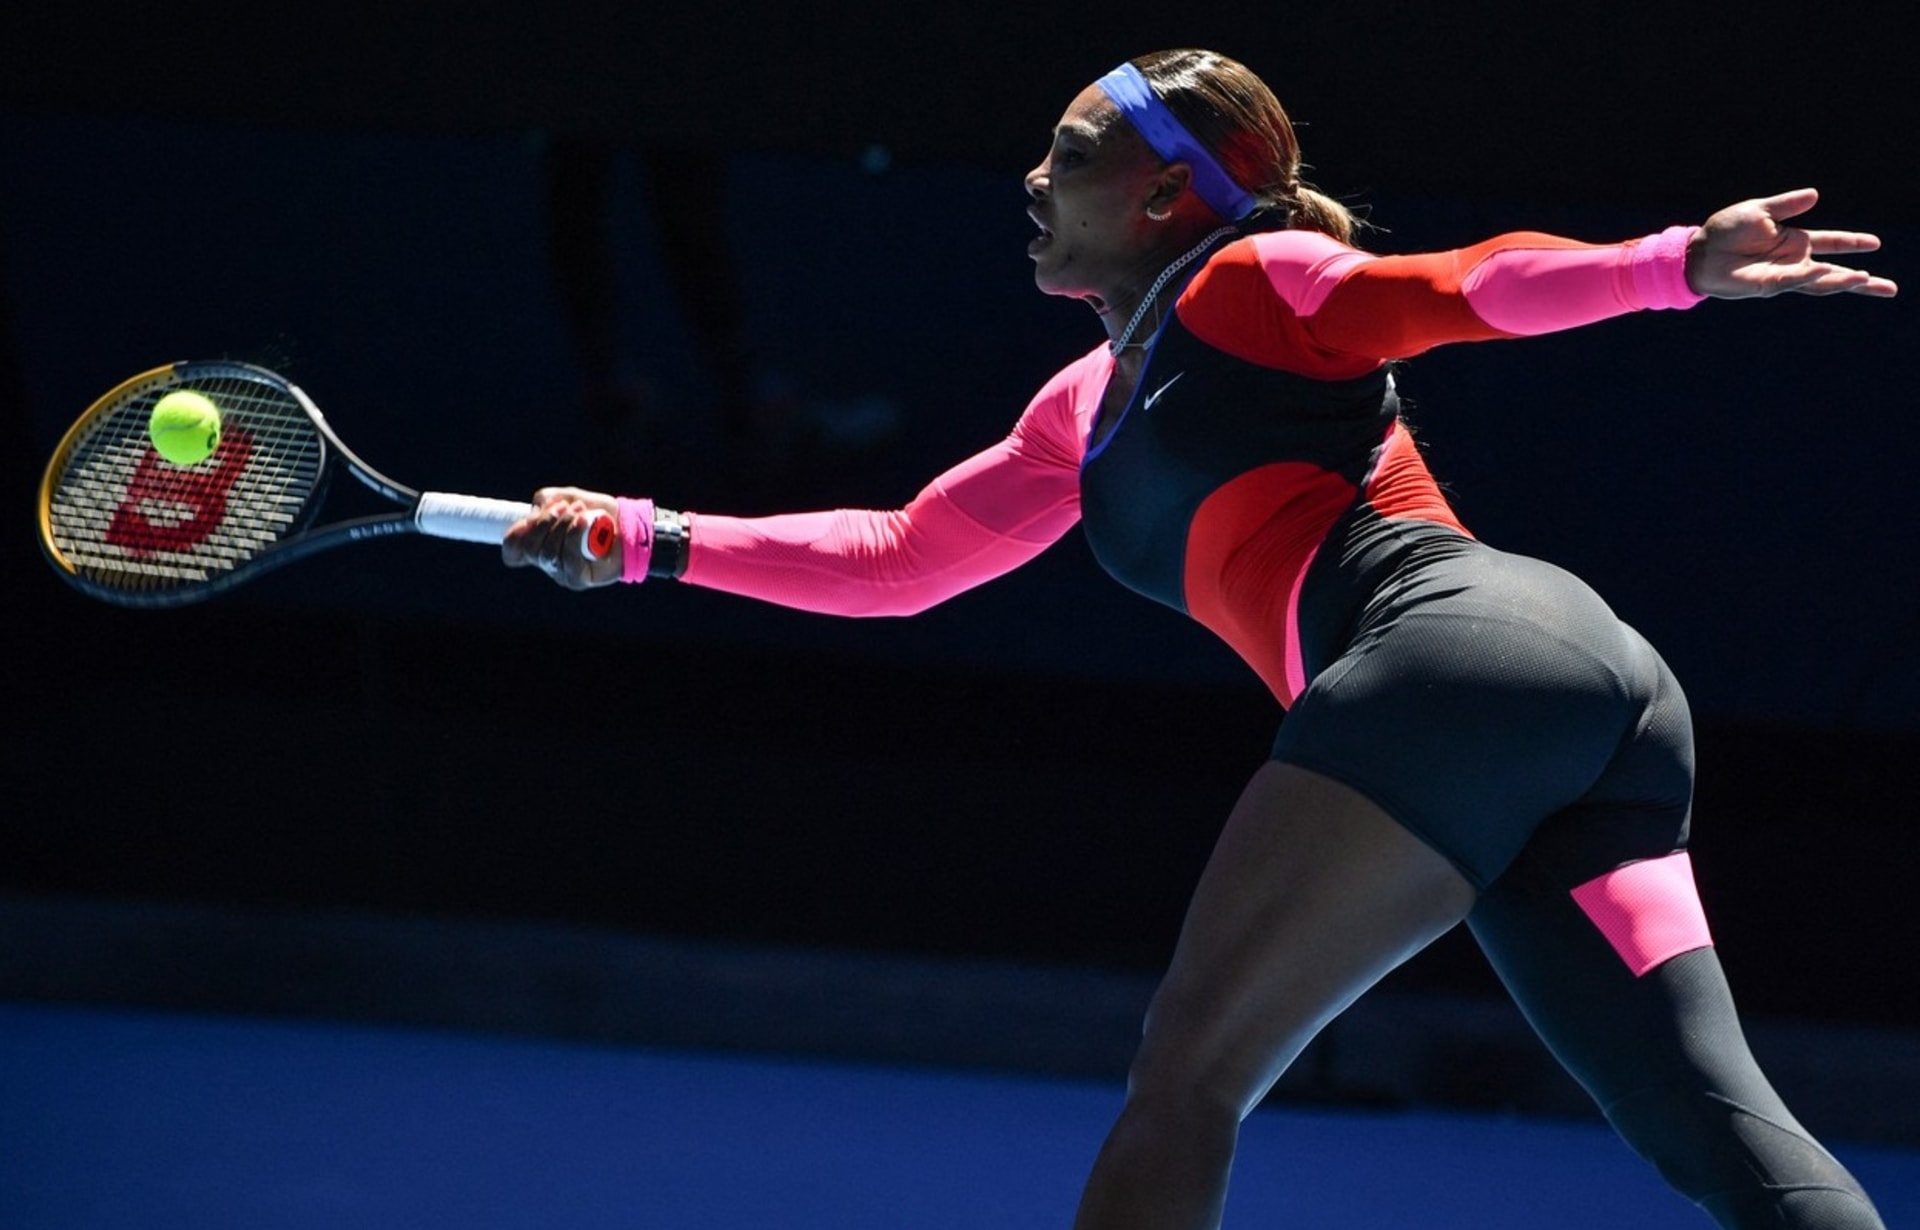 Zatím poslední kousek z dílny Nike, kterým společnost vybavila Williamsovou pro letošní Australian Open. 